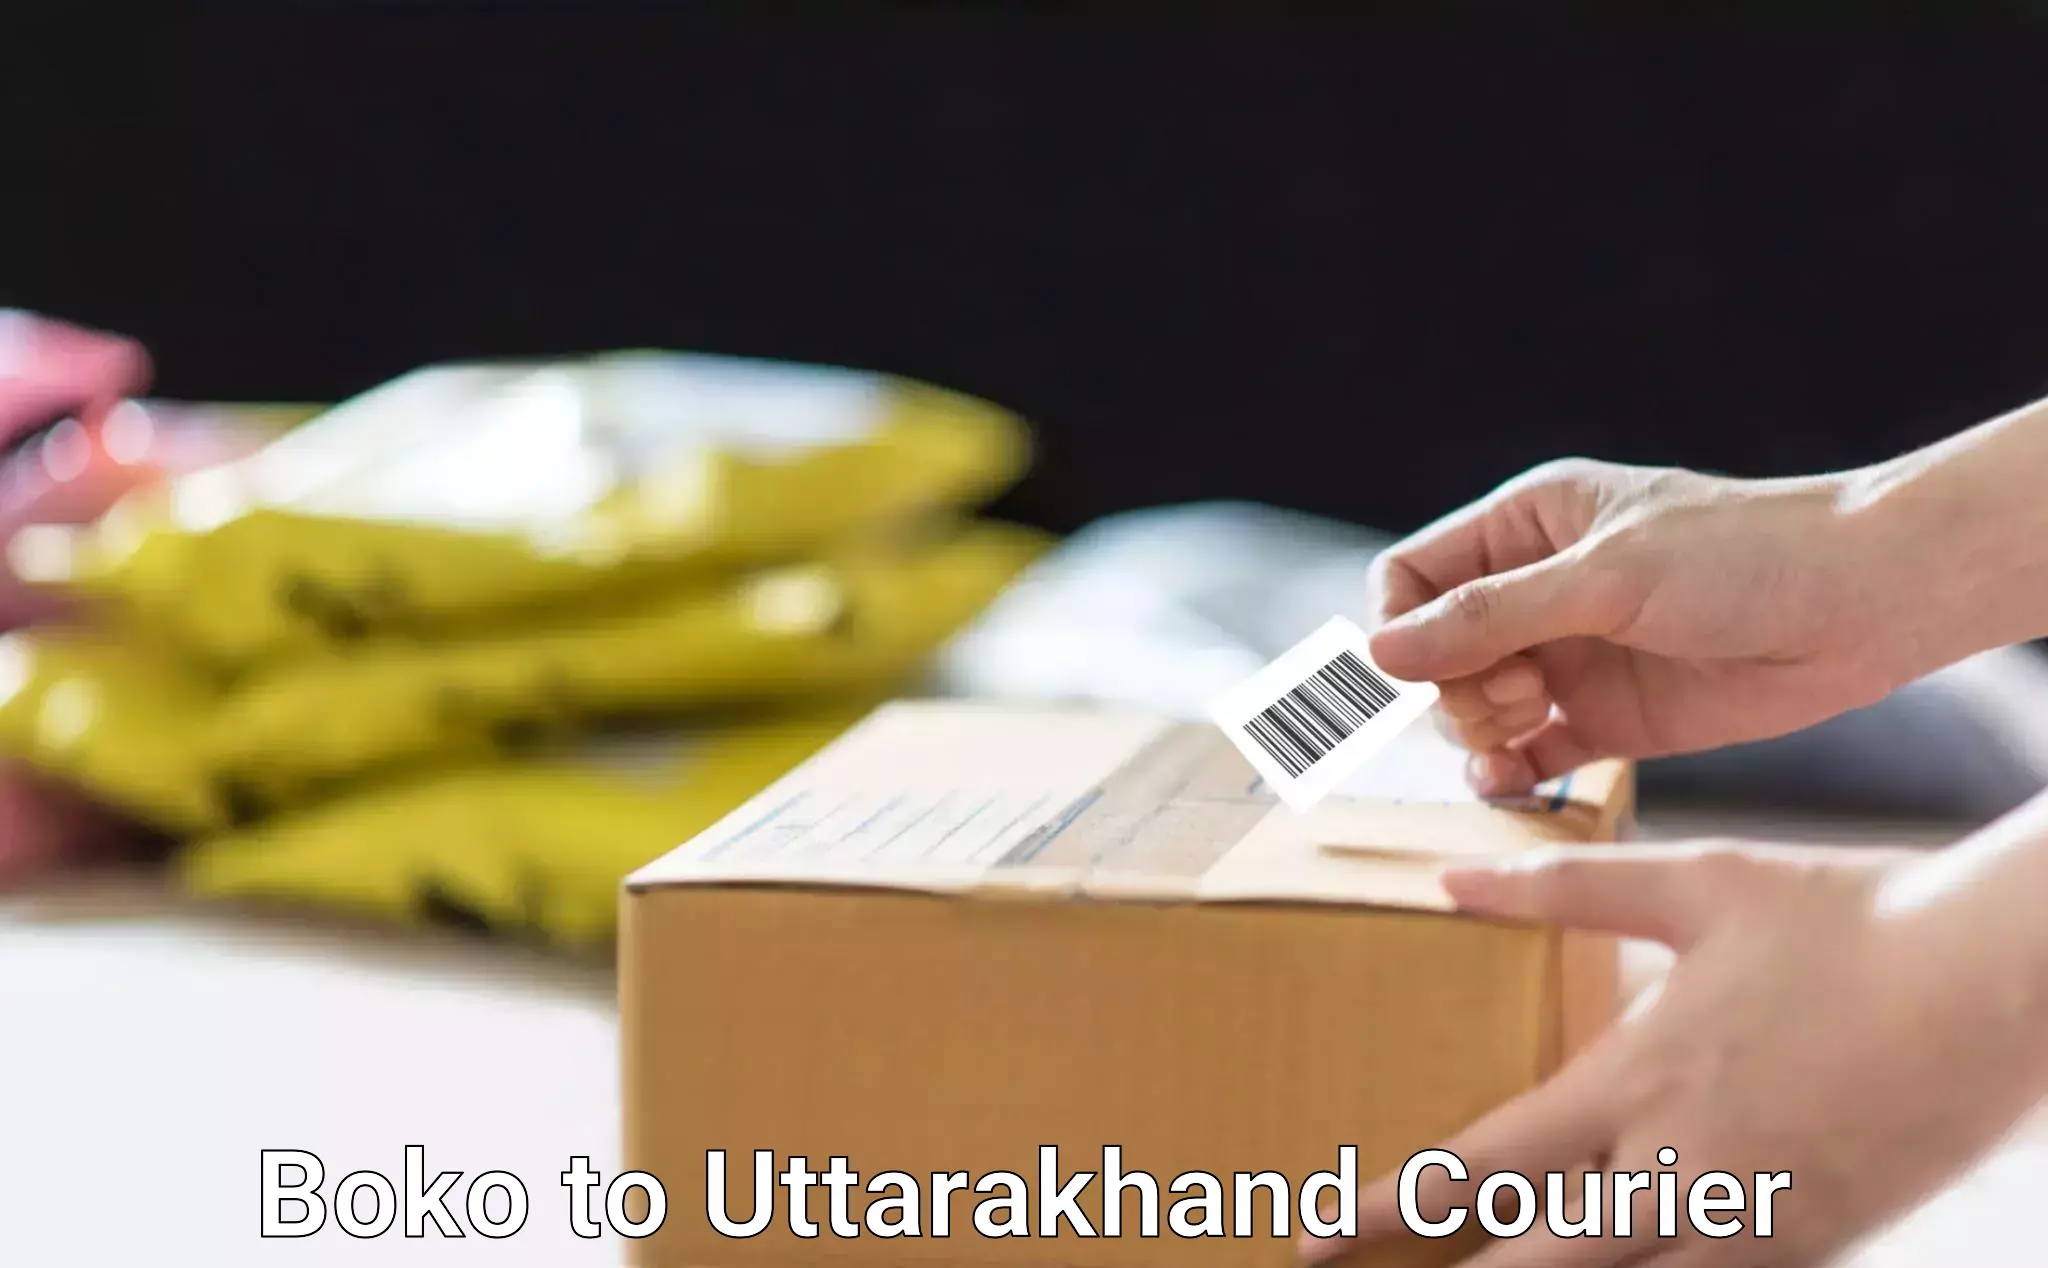 Smart courier technologies in Boko to Uttarakhand